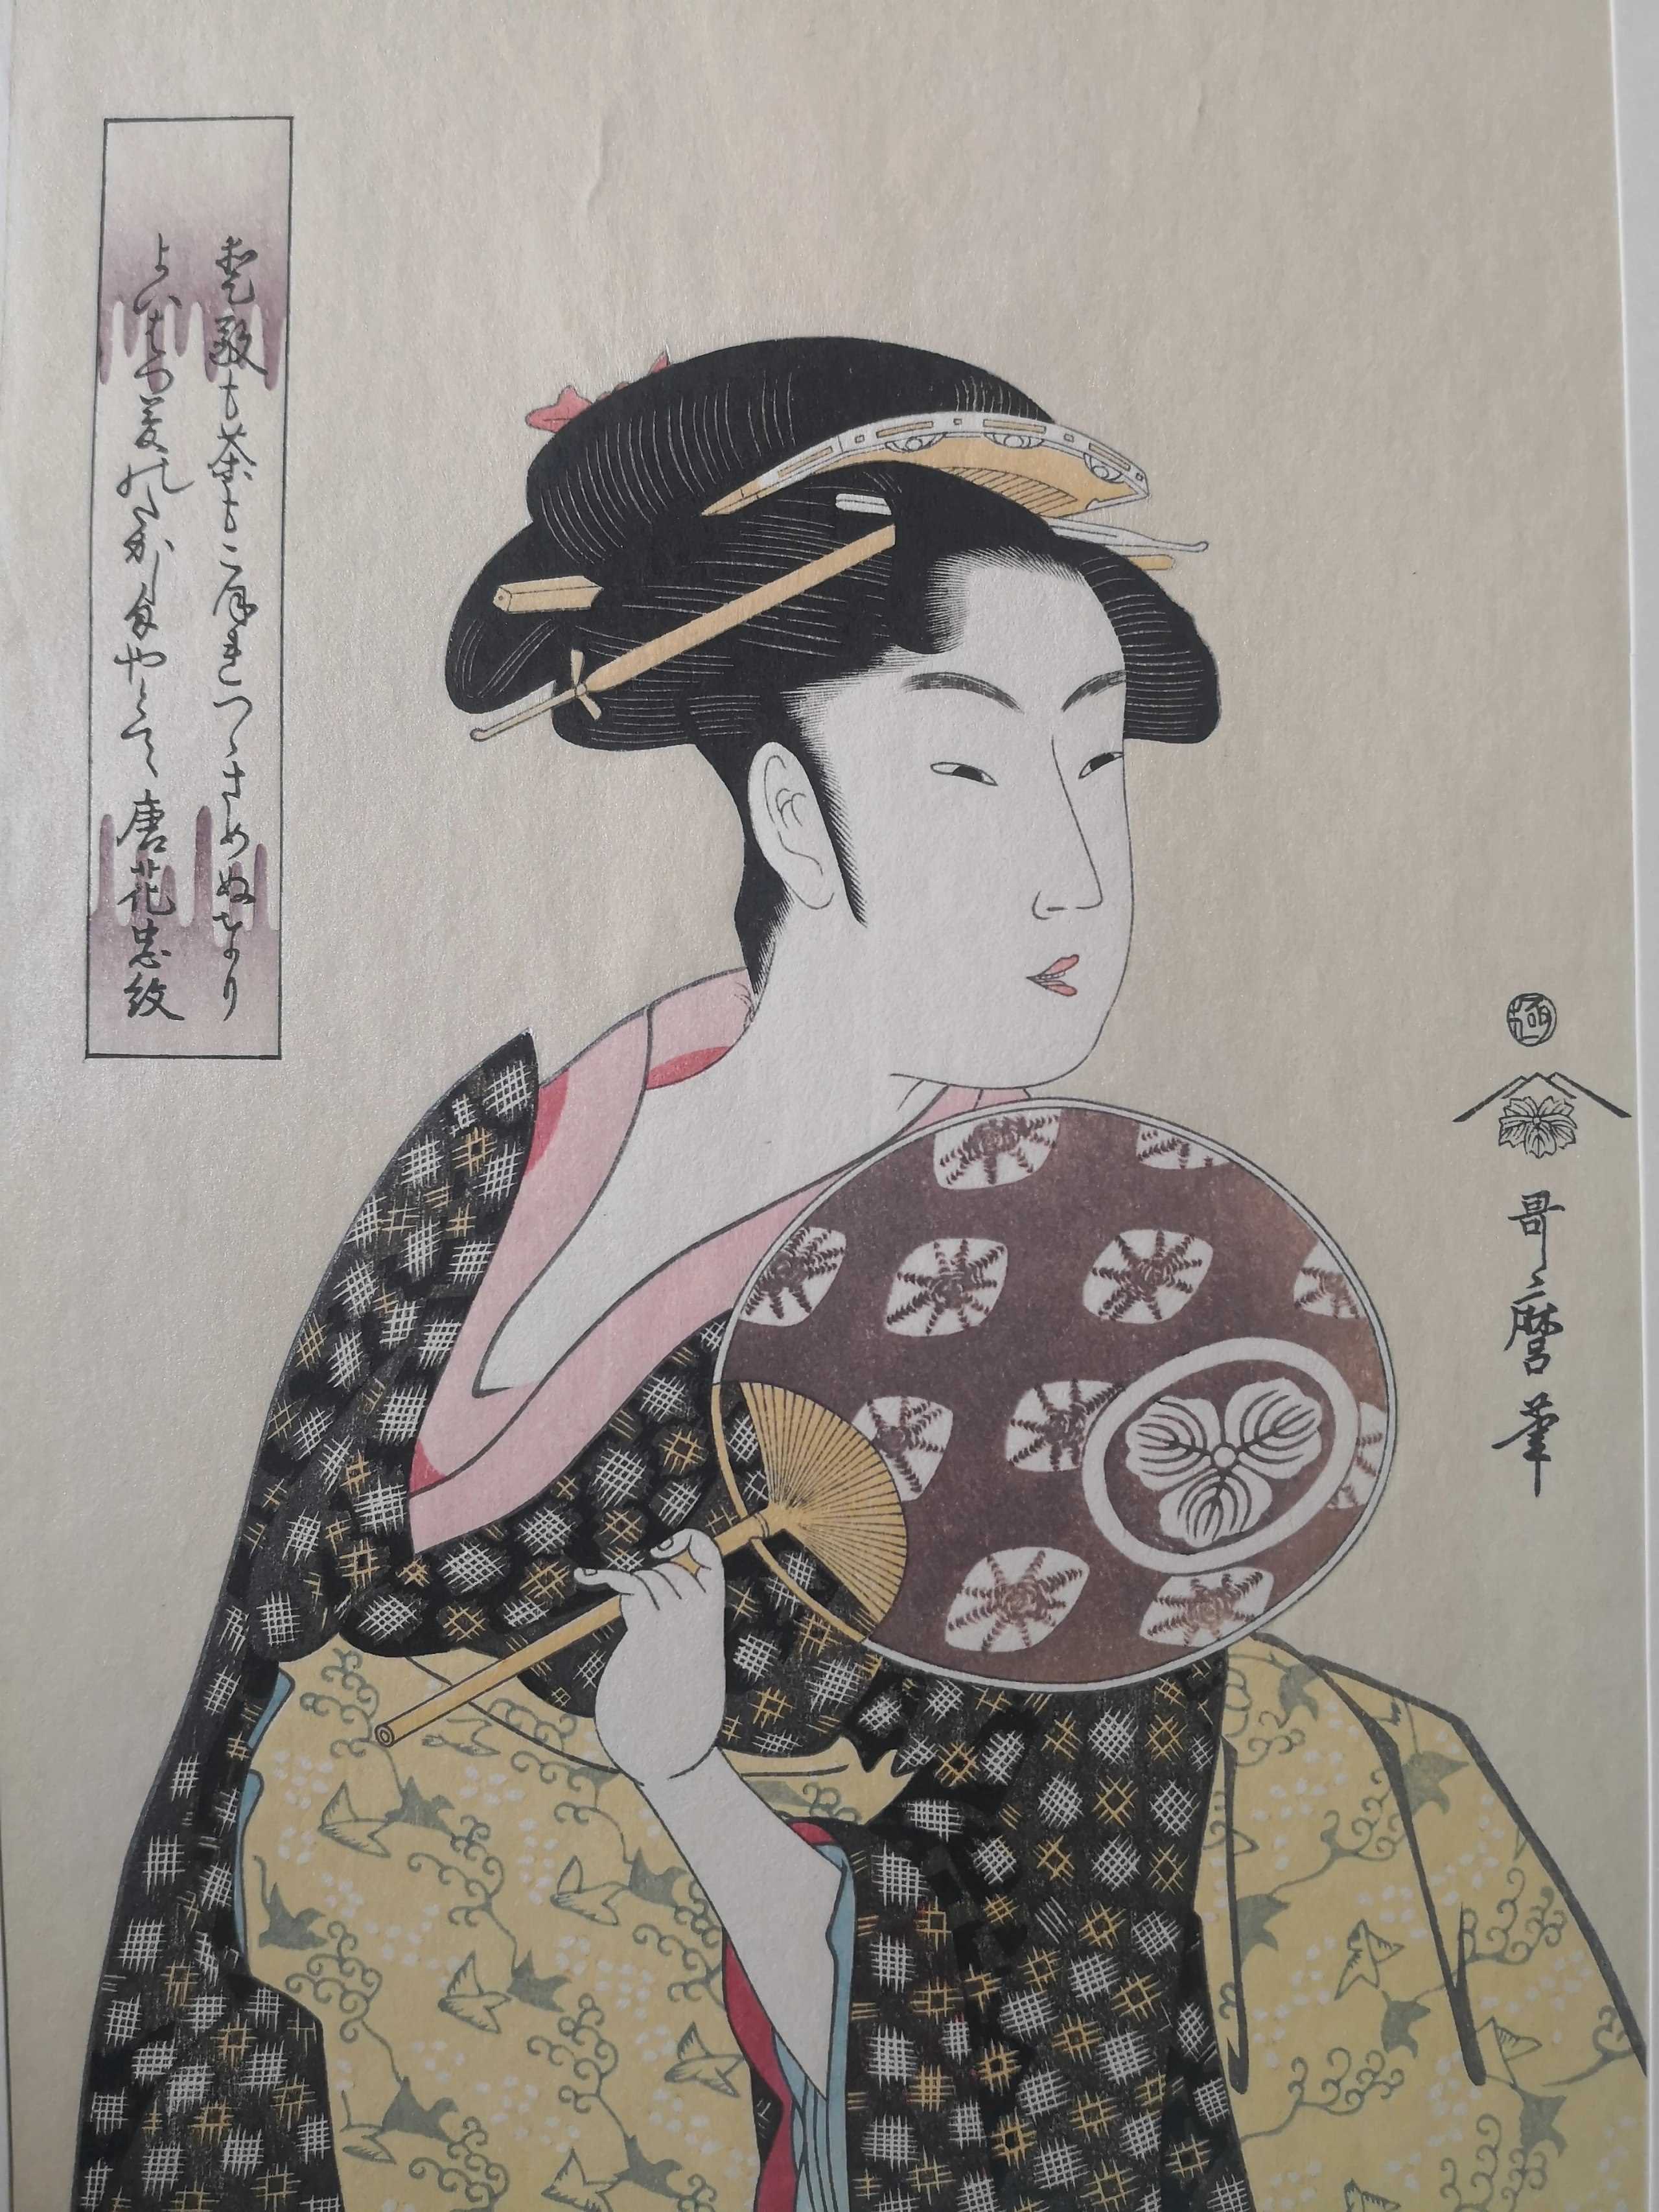 喜多川歌麿持扇美人图珍贵手工木刻浮世绘版画